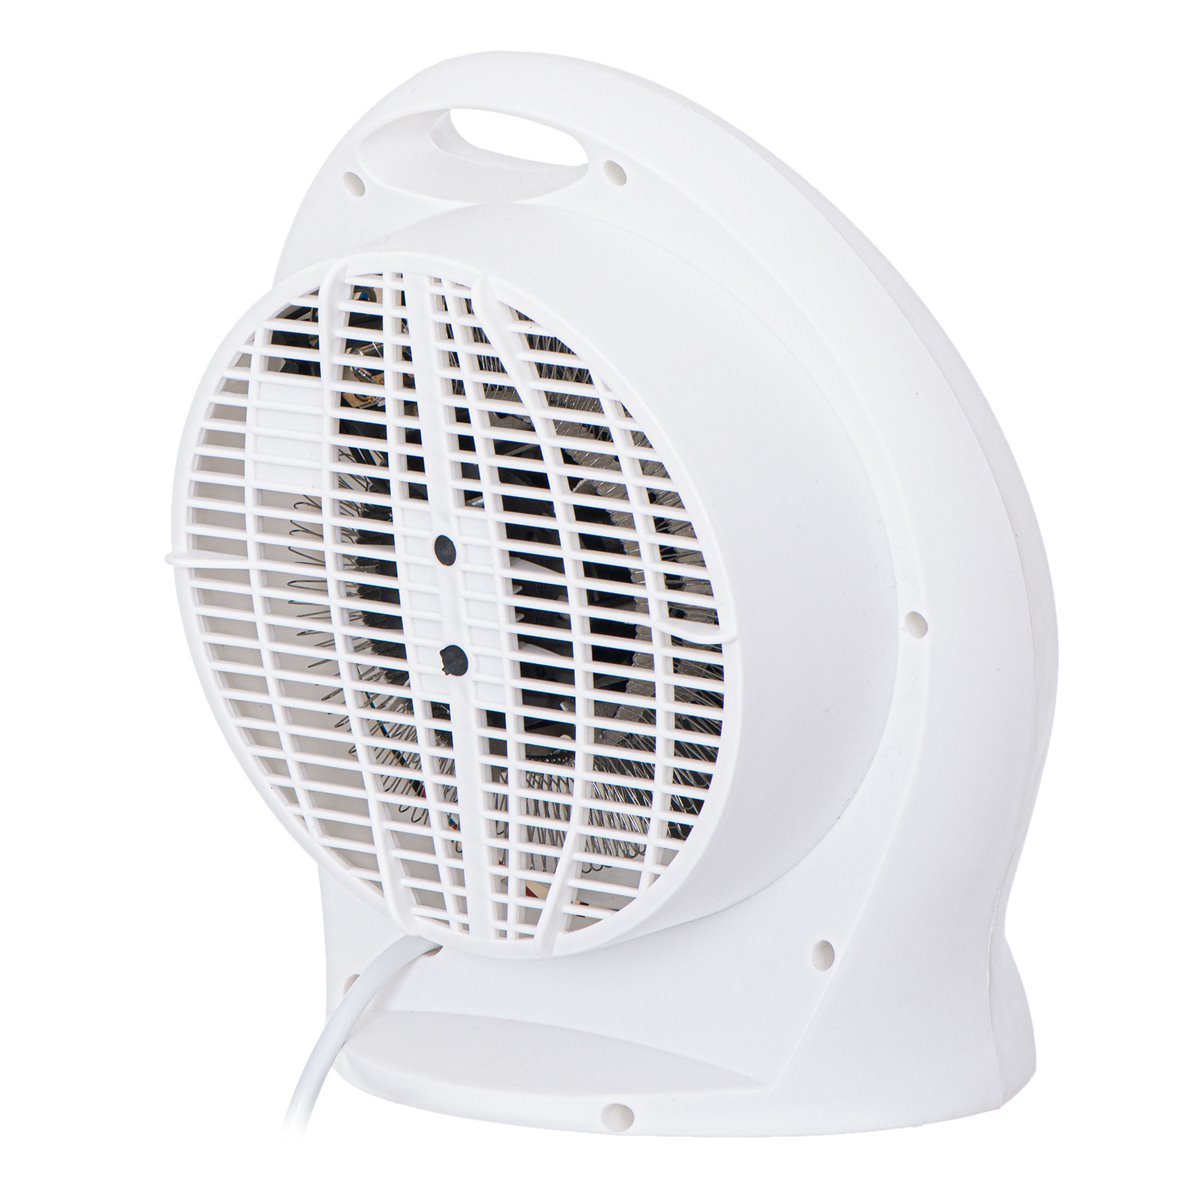 Calefactor Ventilador Aire Caliente / Frío, Termoventilador, 2 Niveles  Temperatura, Termostato, Mesko, Blanco, 2000, MS7719